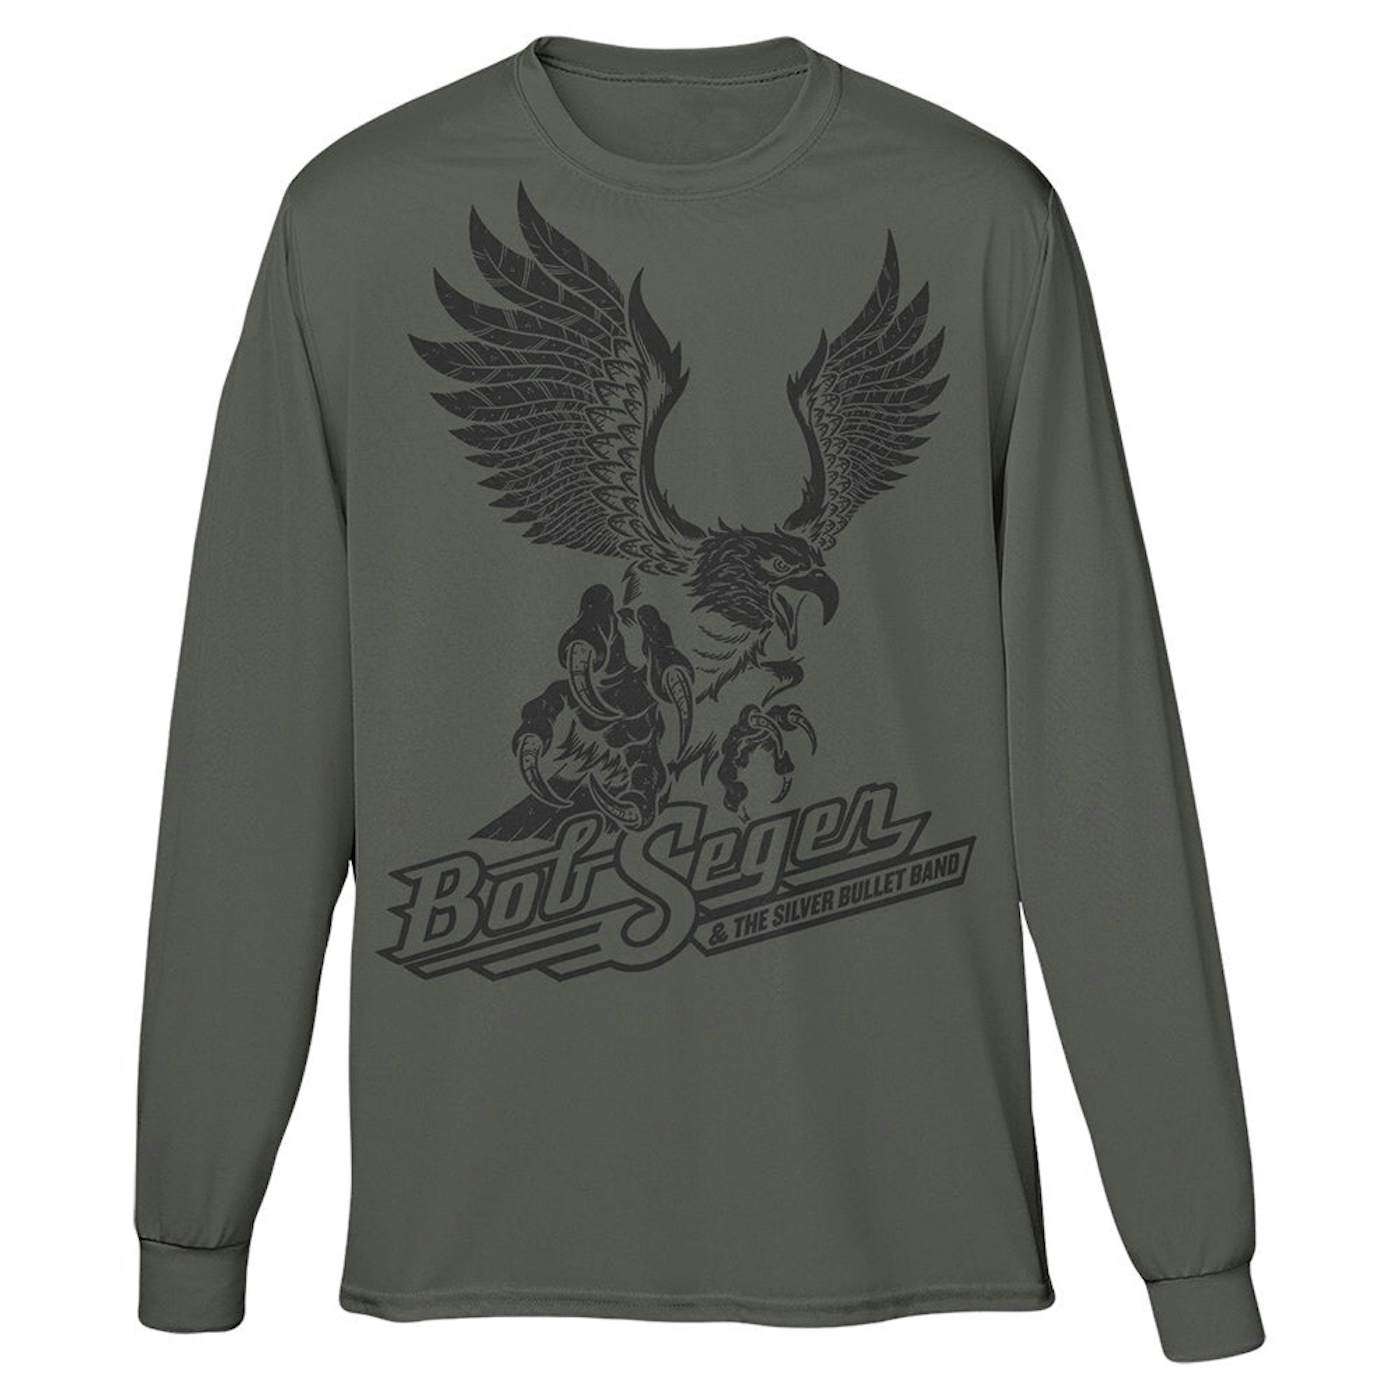 Bob Seger & The Silver Bullet Band Soaring Eagle Long Sleeve Tee